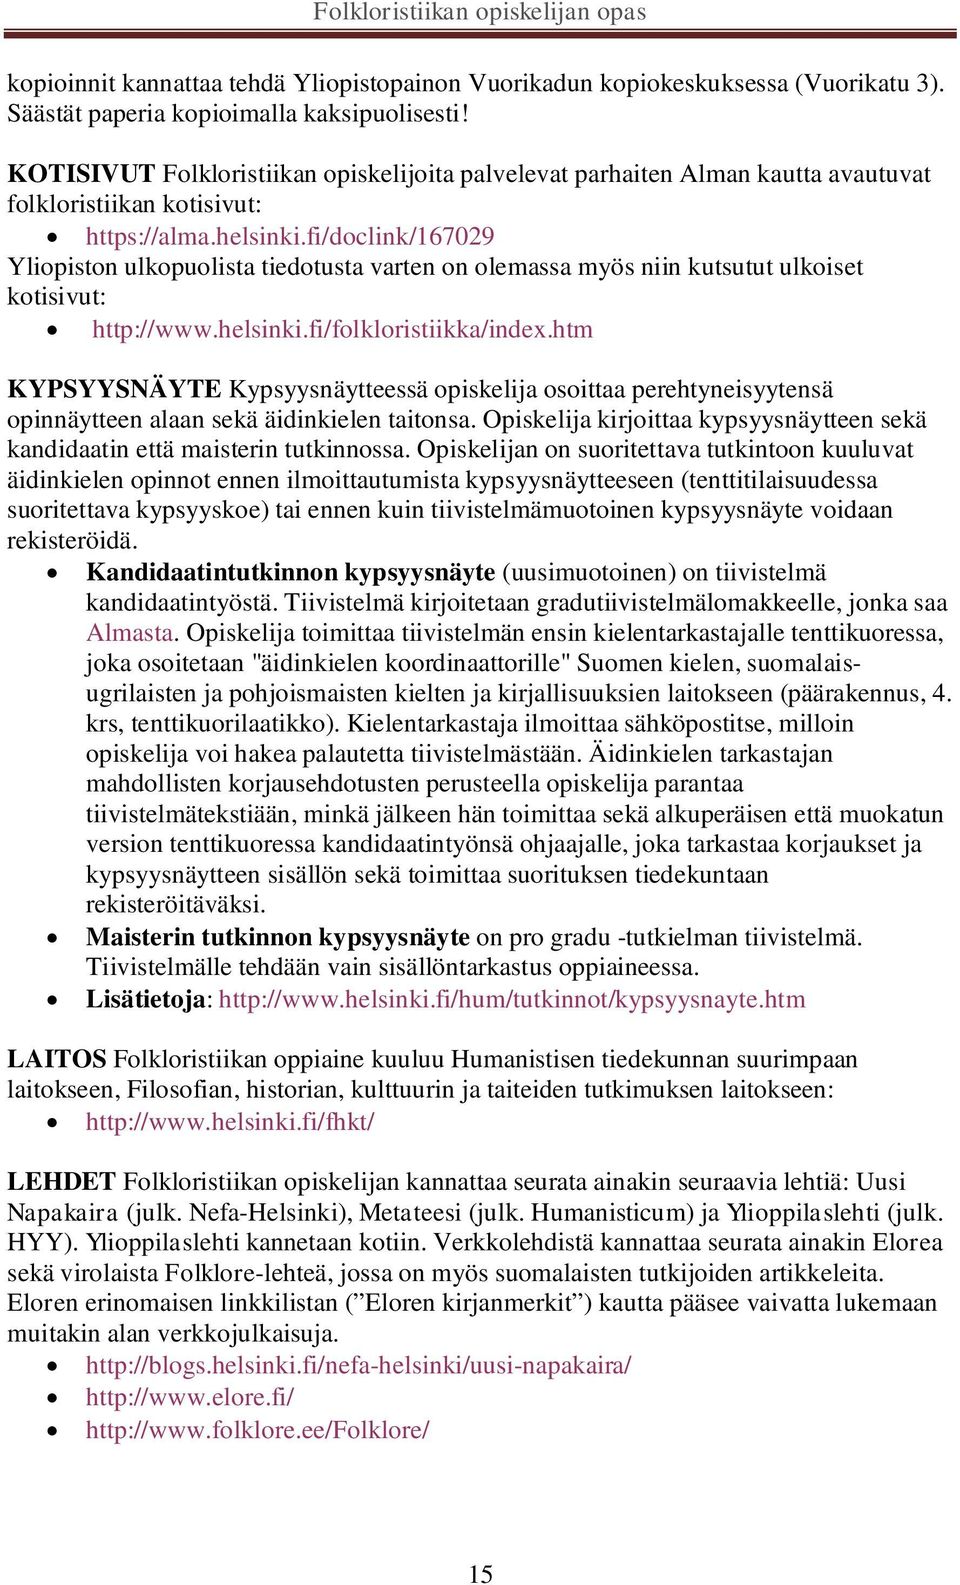 fi/doclink/167029 Yliopiston ulkopuolista tiedotusta varten on olemassa myös niin kutsutut ulkoiset kotisivut: http://www.helsinki.fi/folkloristiikka/index.